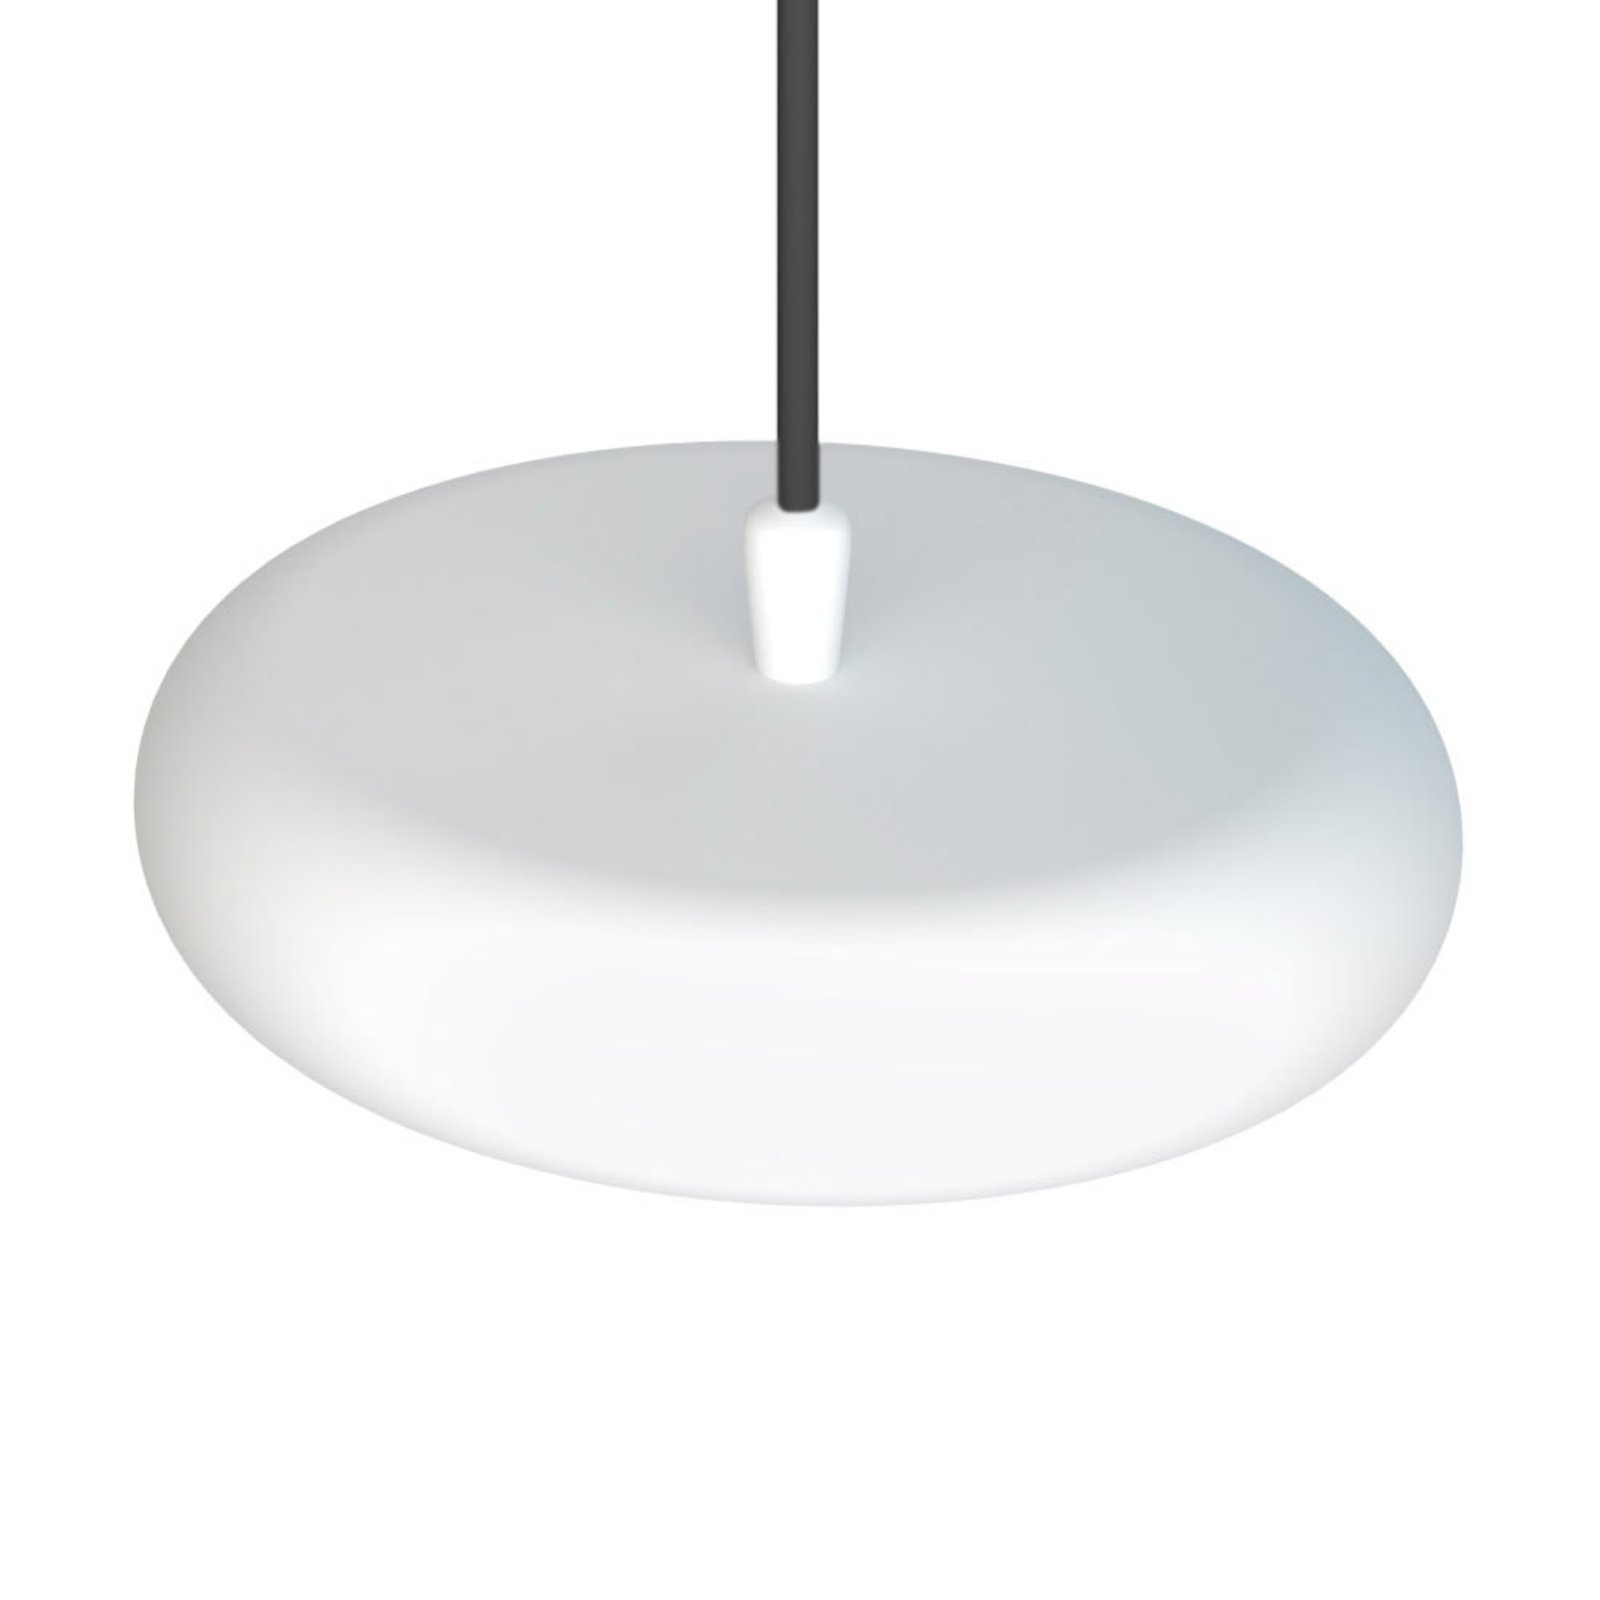 Boina LED pendant light, Ø 19 cm, white